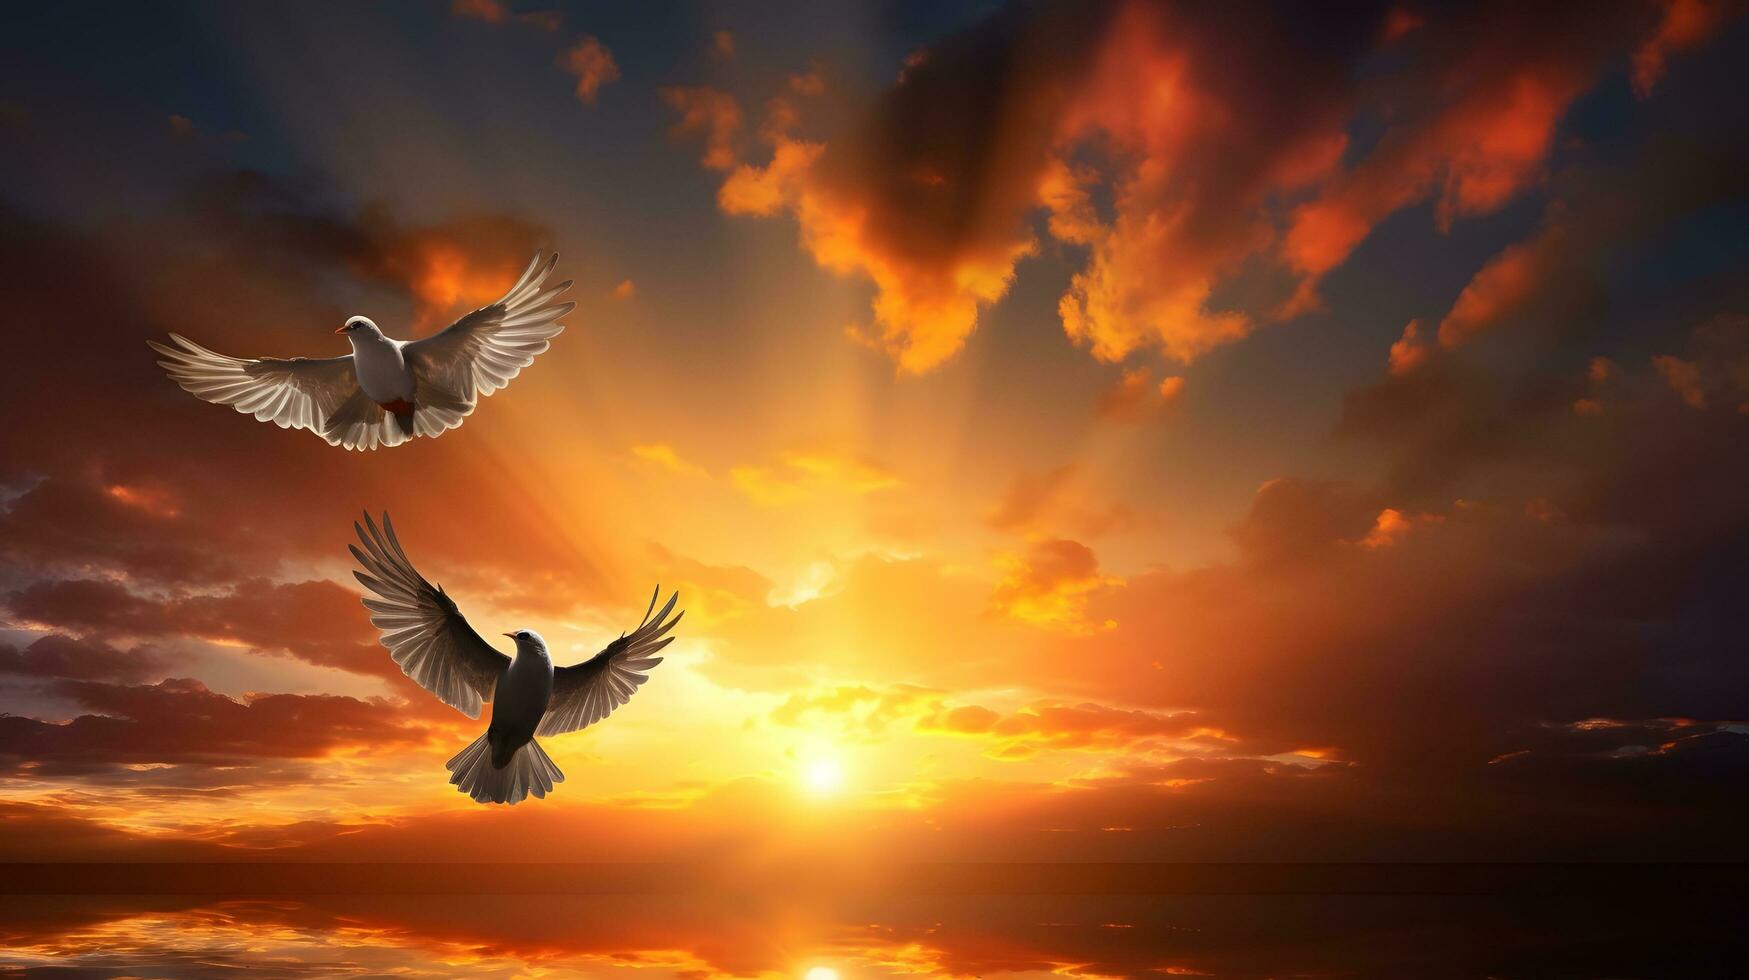 Two Birds Soaring in a Fiery Sky photo